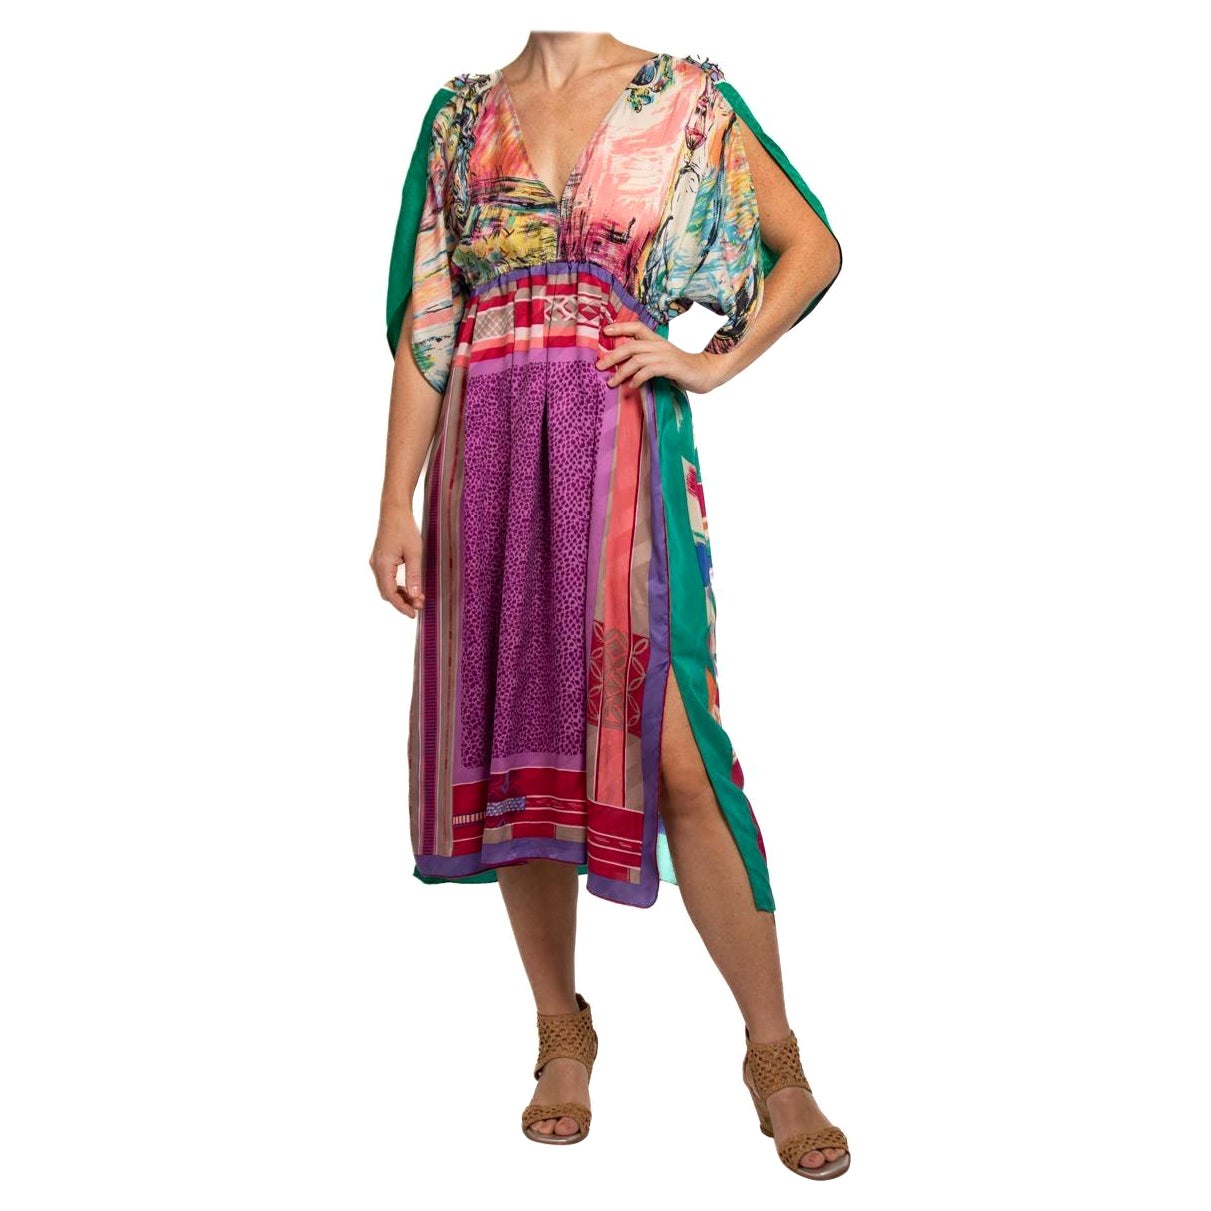 MORPHEW COLLECTION Purple & Green  Silk Virgo Empire Waist Dress Made From Vint